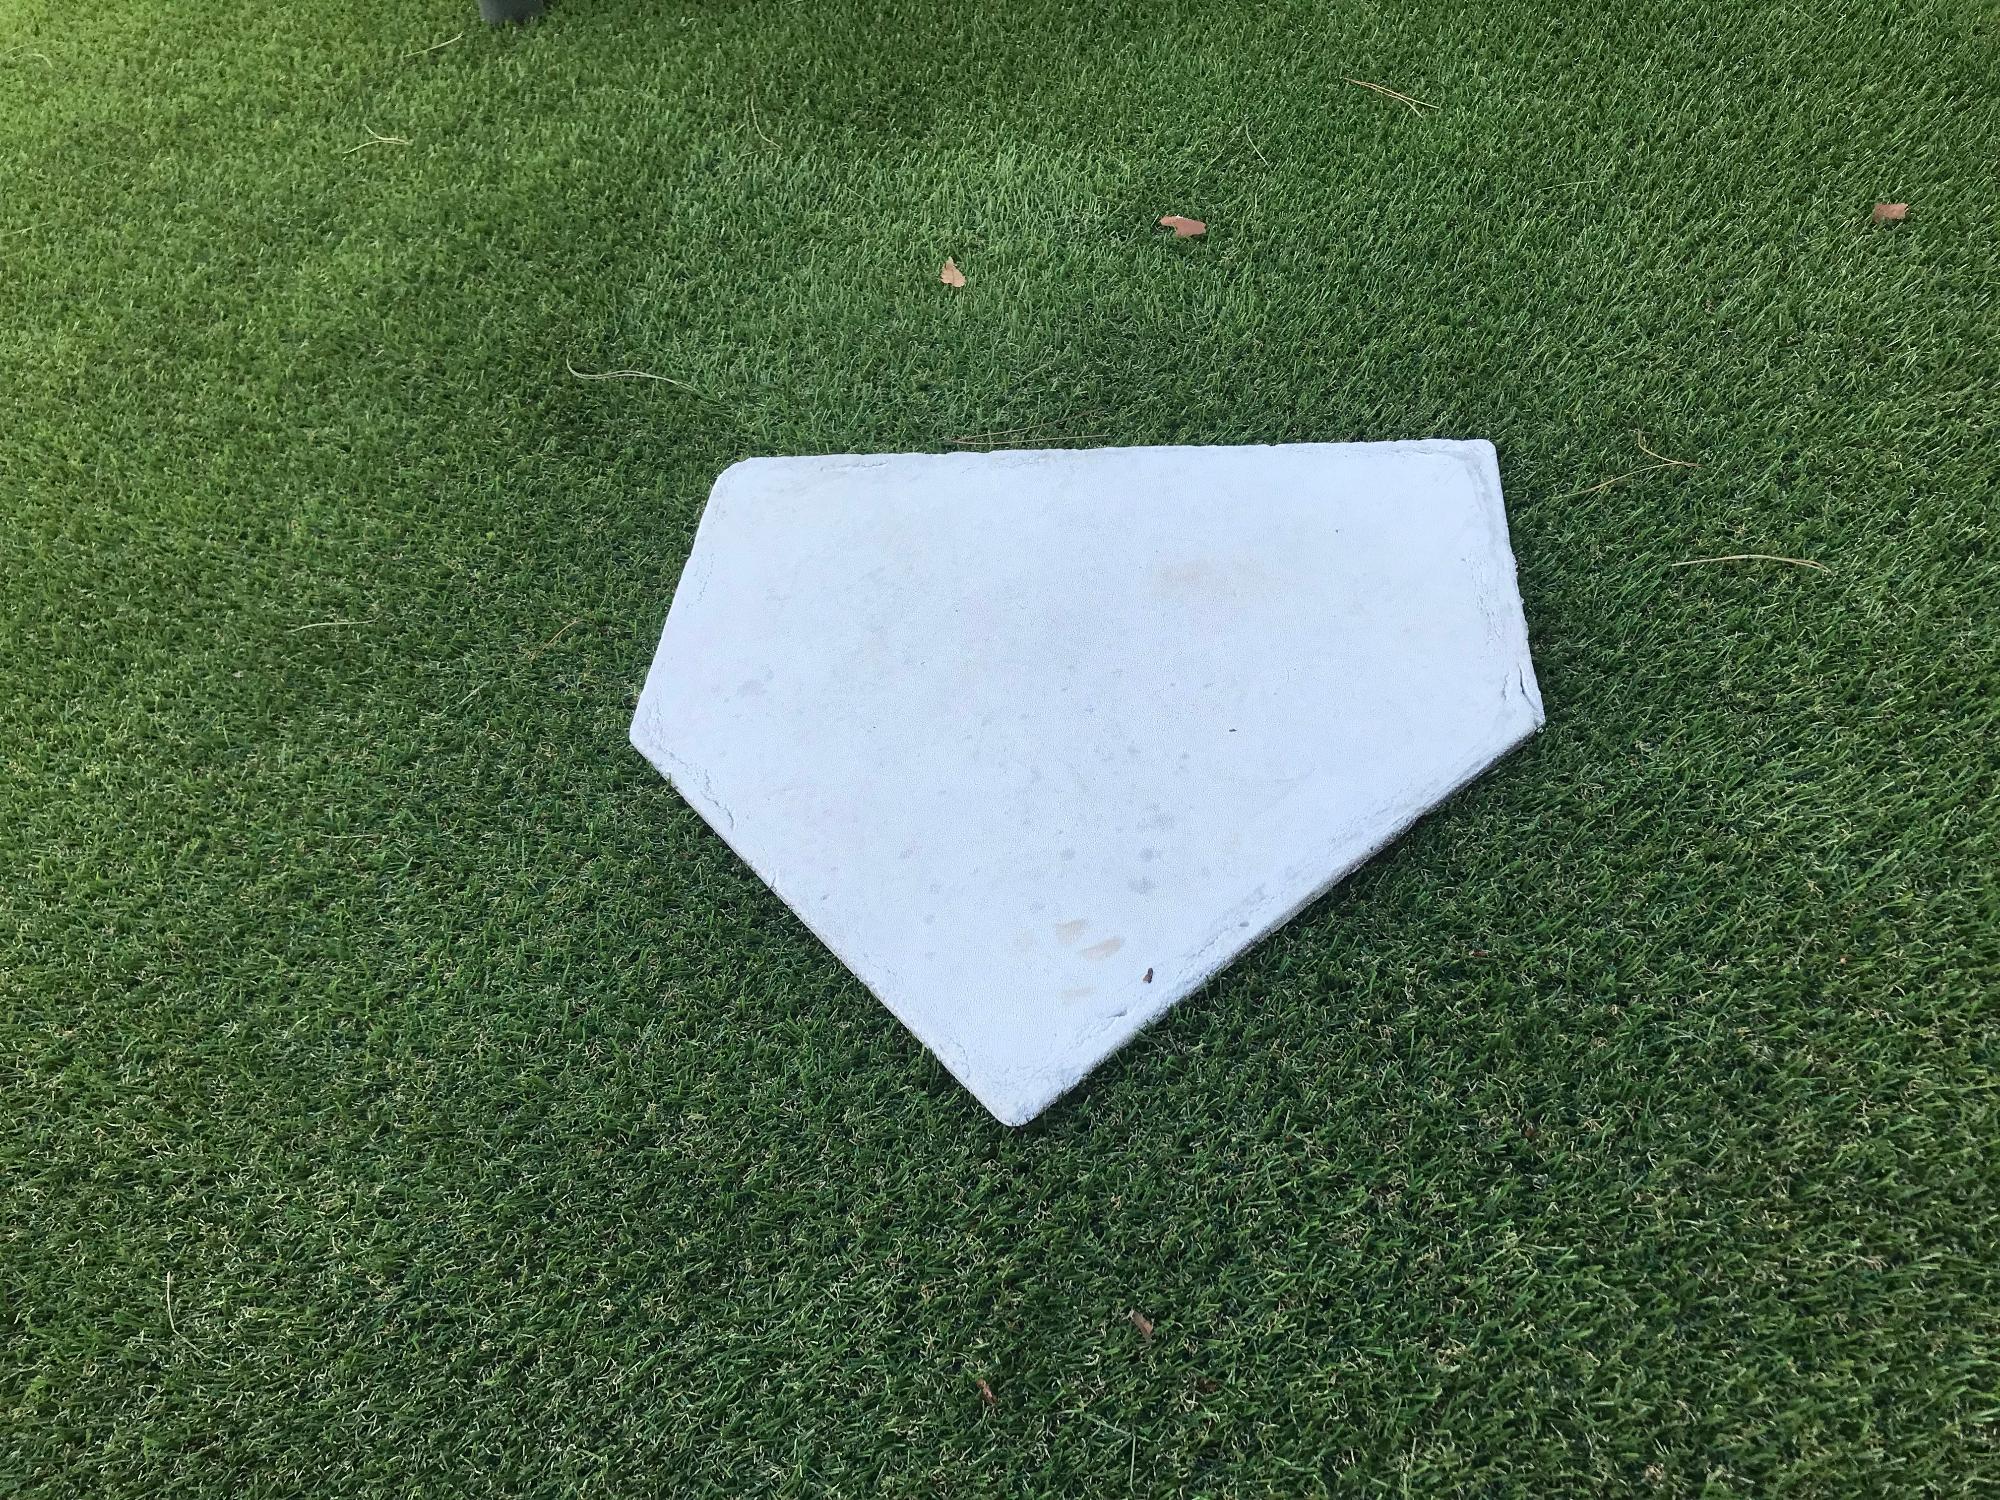 テラス席の芝の上に置かれた白い5角形の板